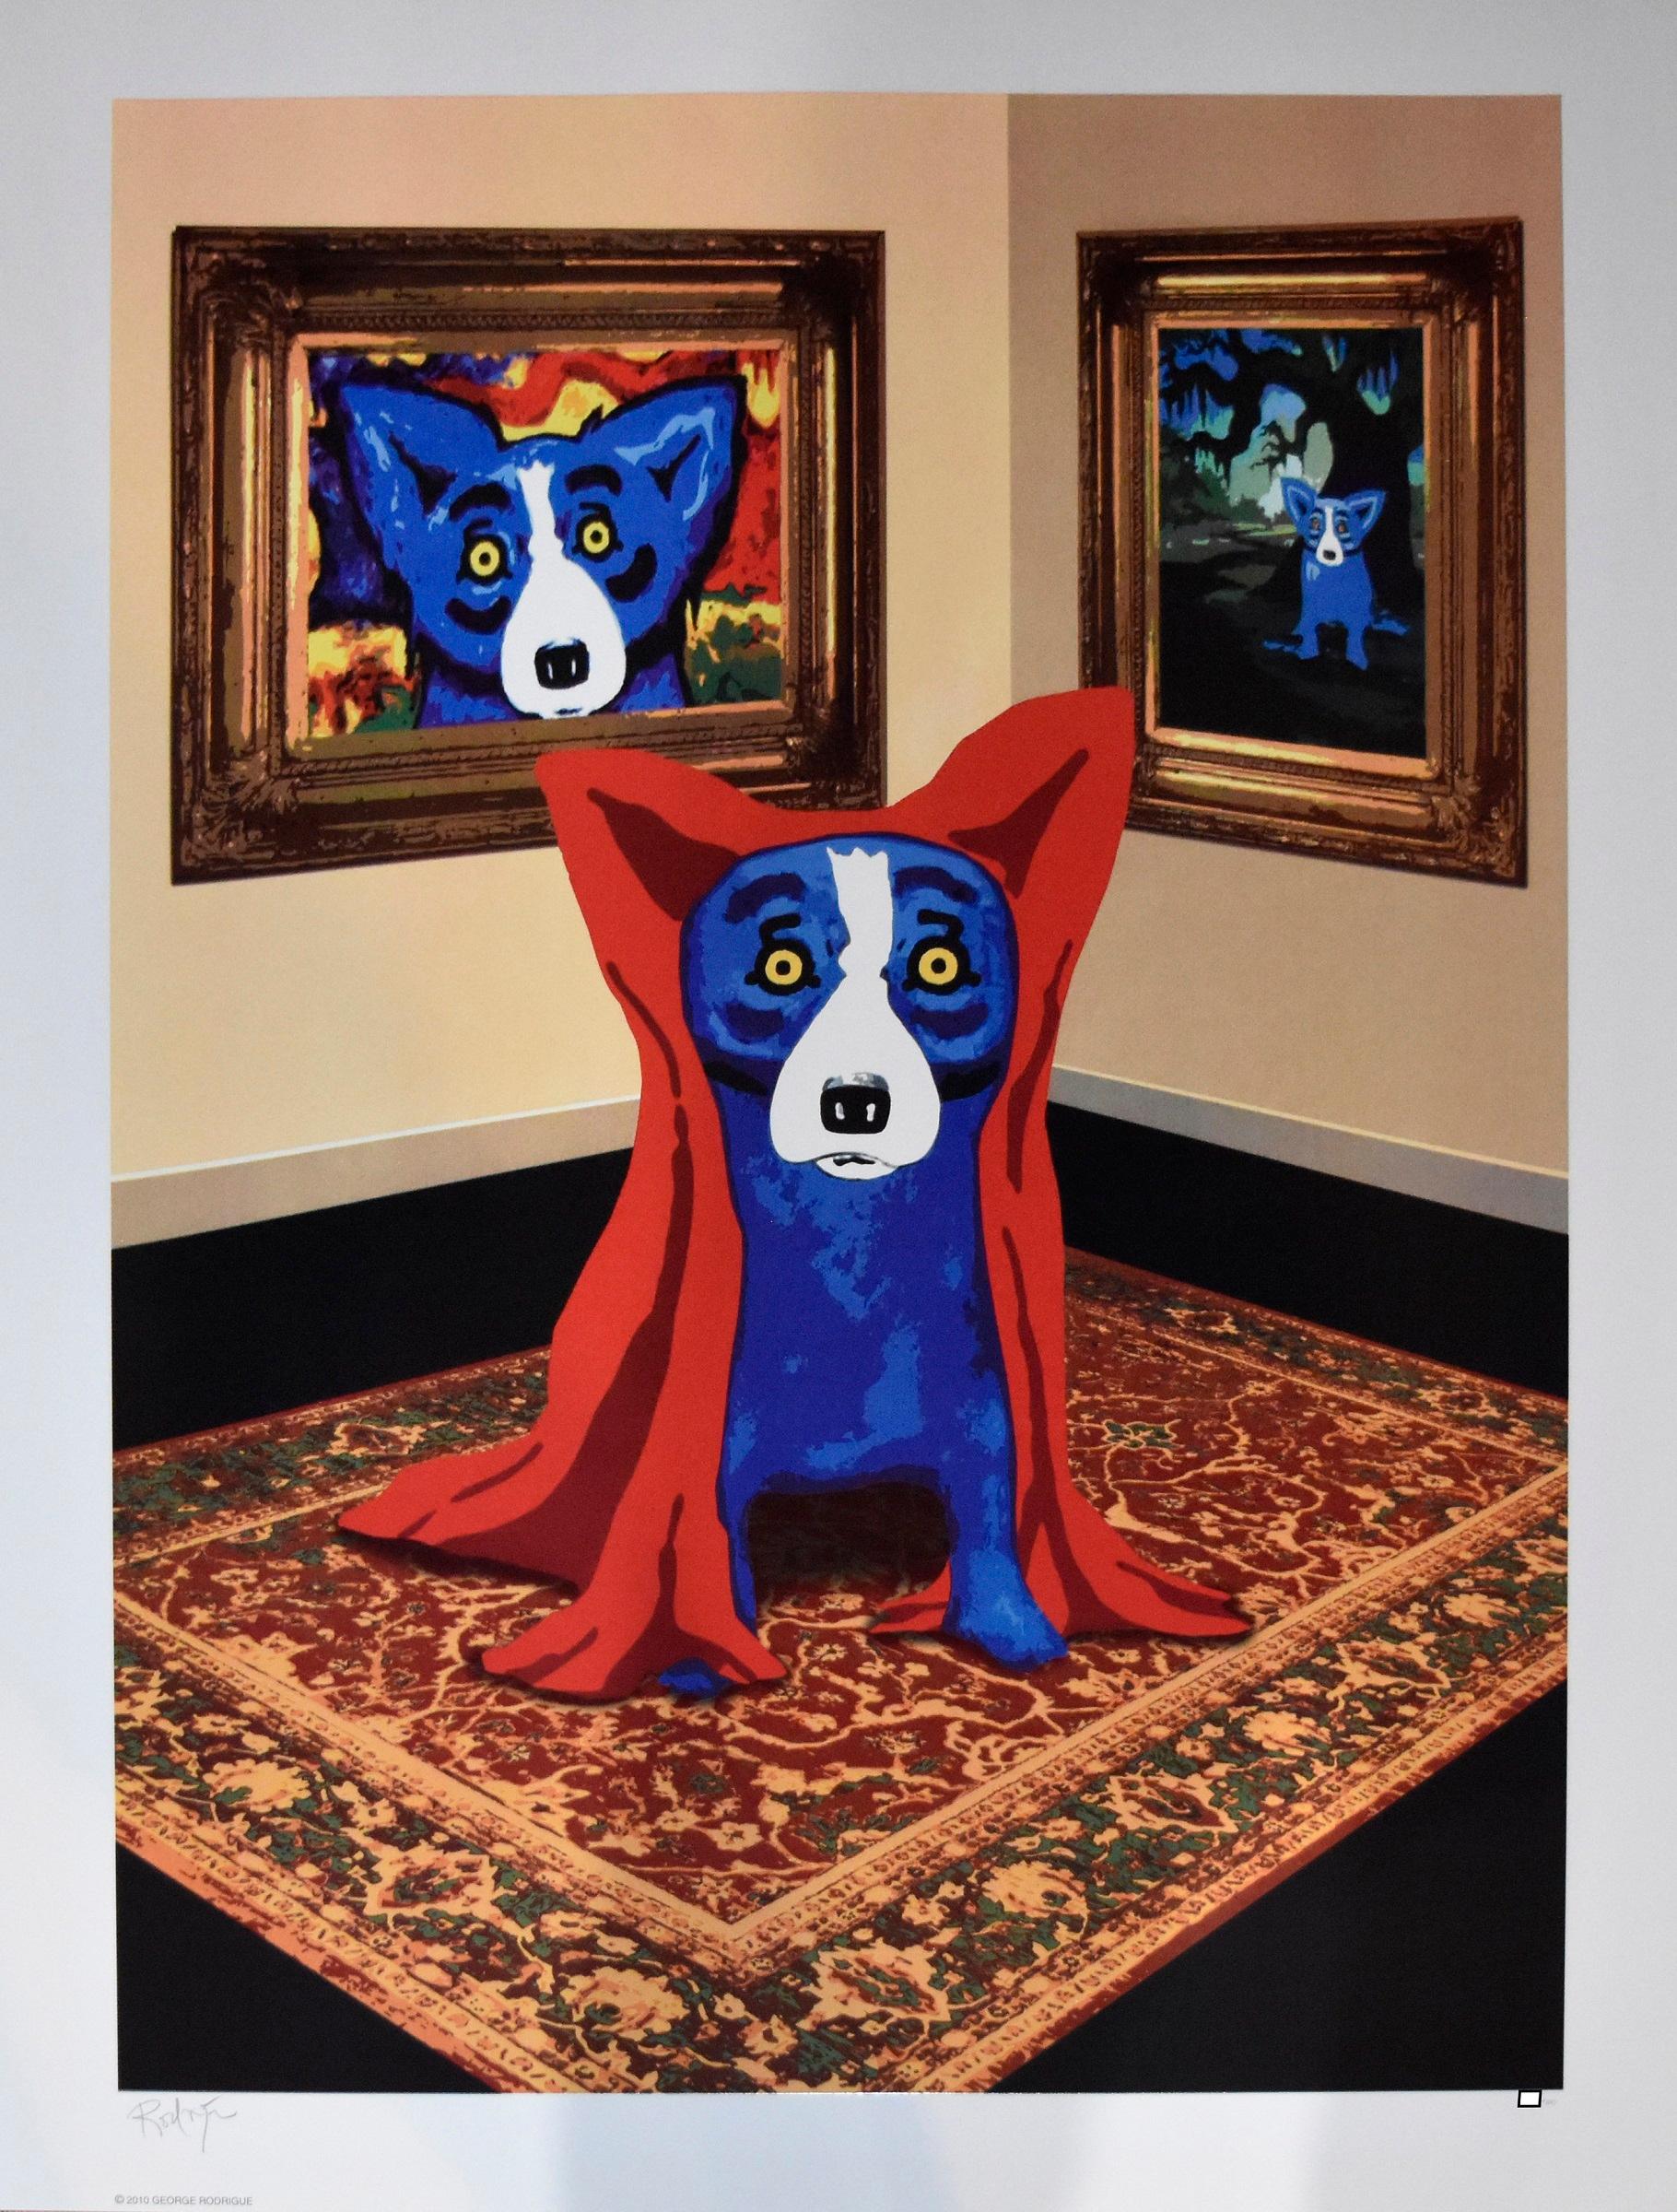 Dieses Werk von Blue Dog zeigt einen blauen Hund, der eine rote Decke über sich trägt und auf einem mehrfarbigen Teppich in einem Raum sitzt, in dem zwei Porträts von Blue Dog an einer beigen Wand hängen. Dieser Druck wurde anlässlich der Eröffnung